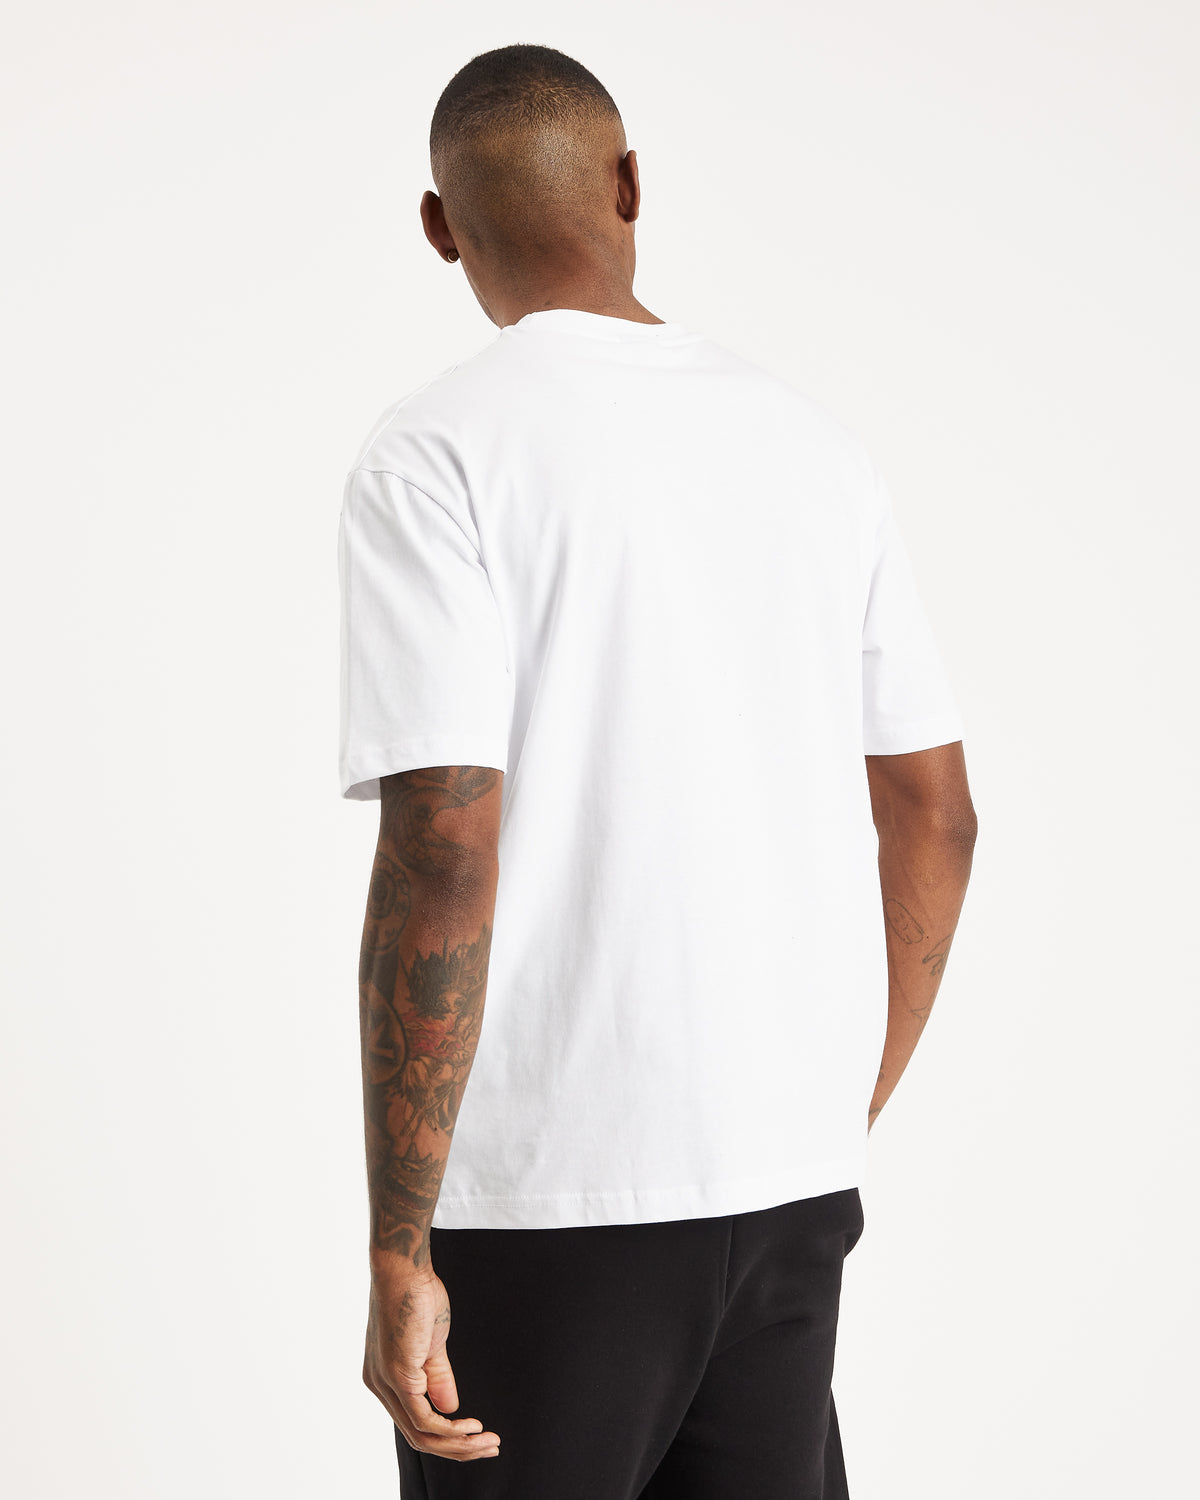 OG Core T-Shirt - White/Black